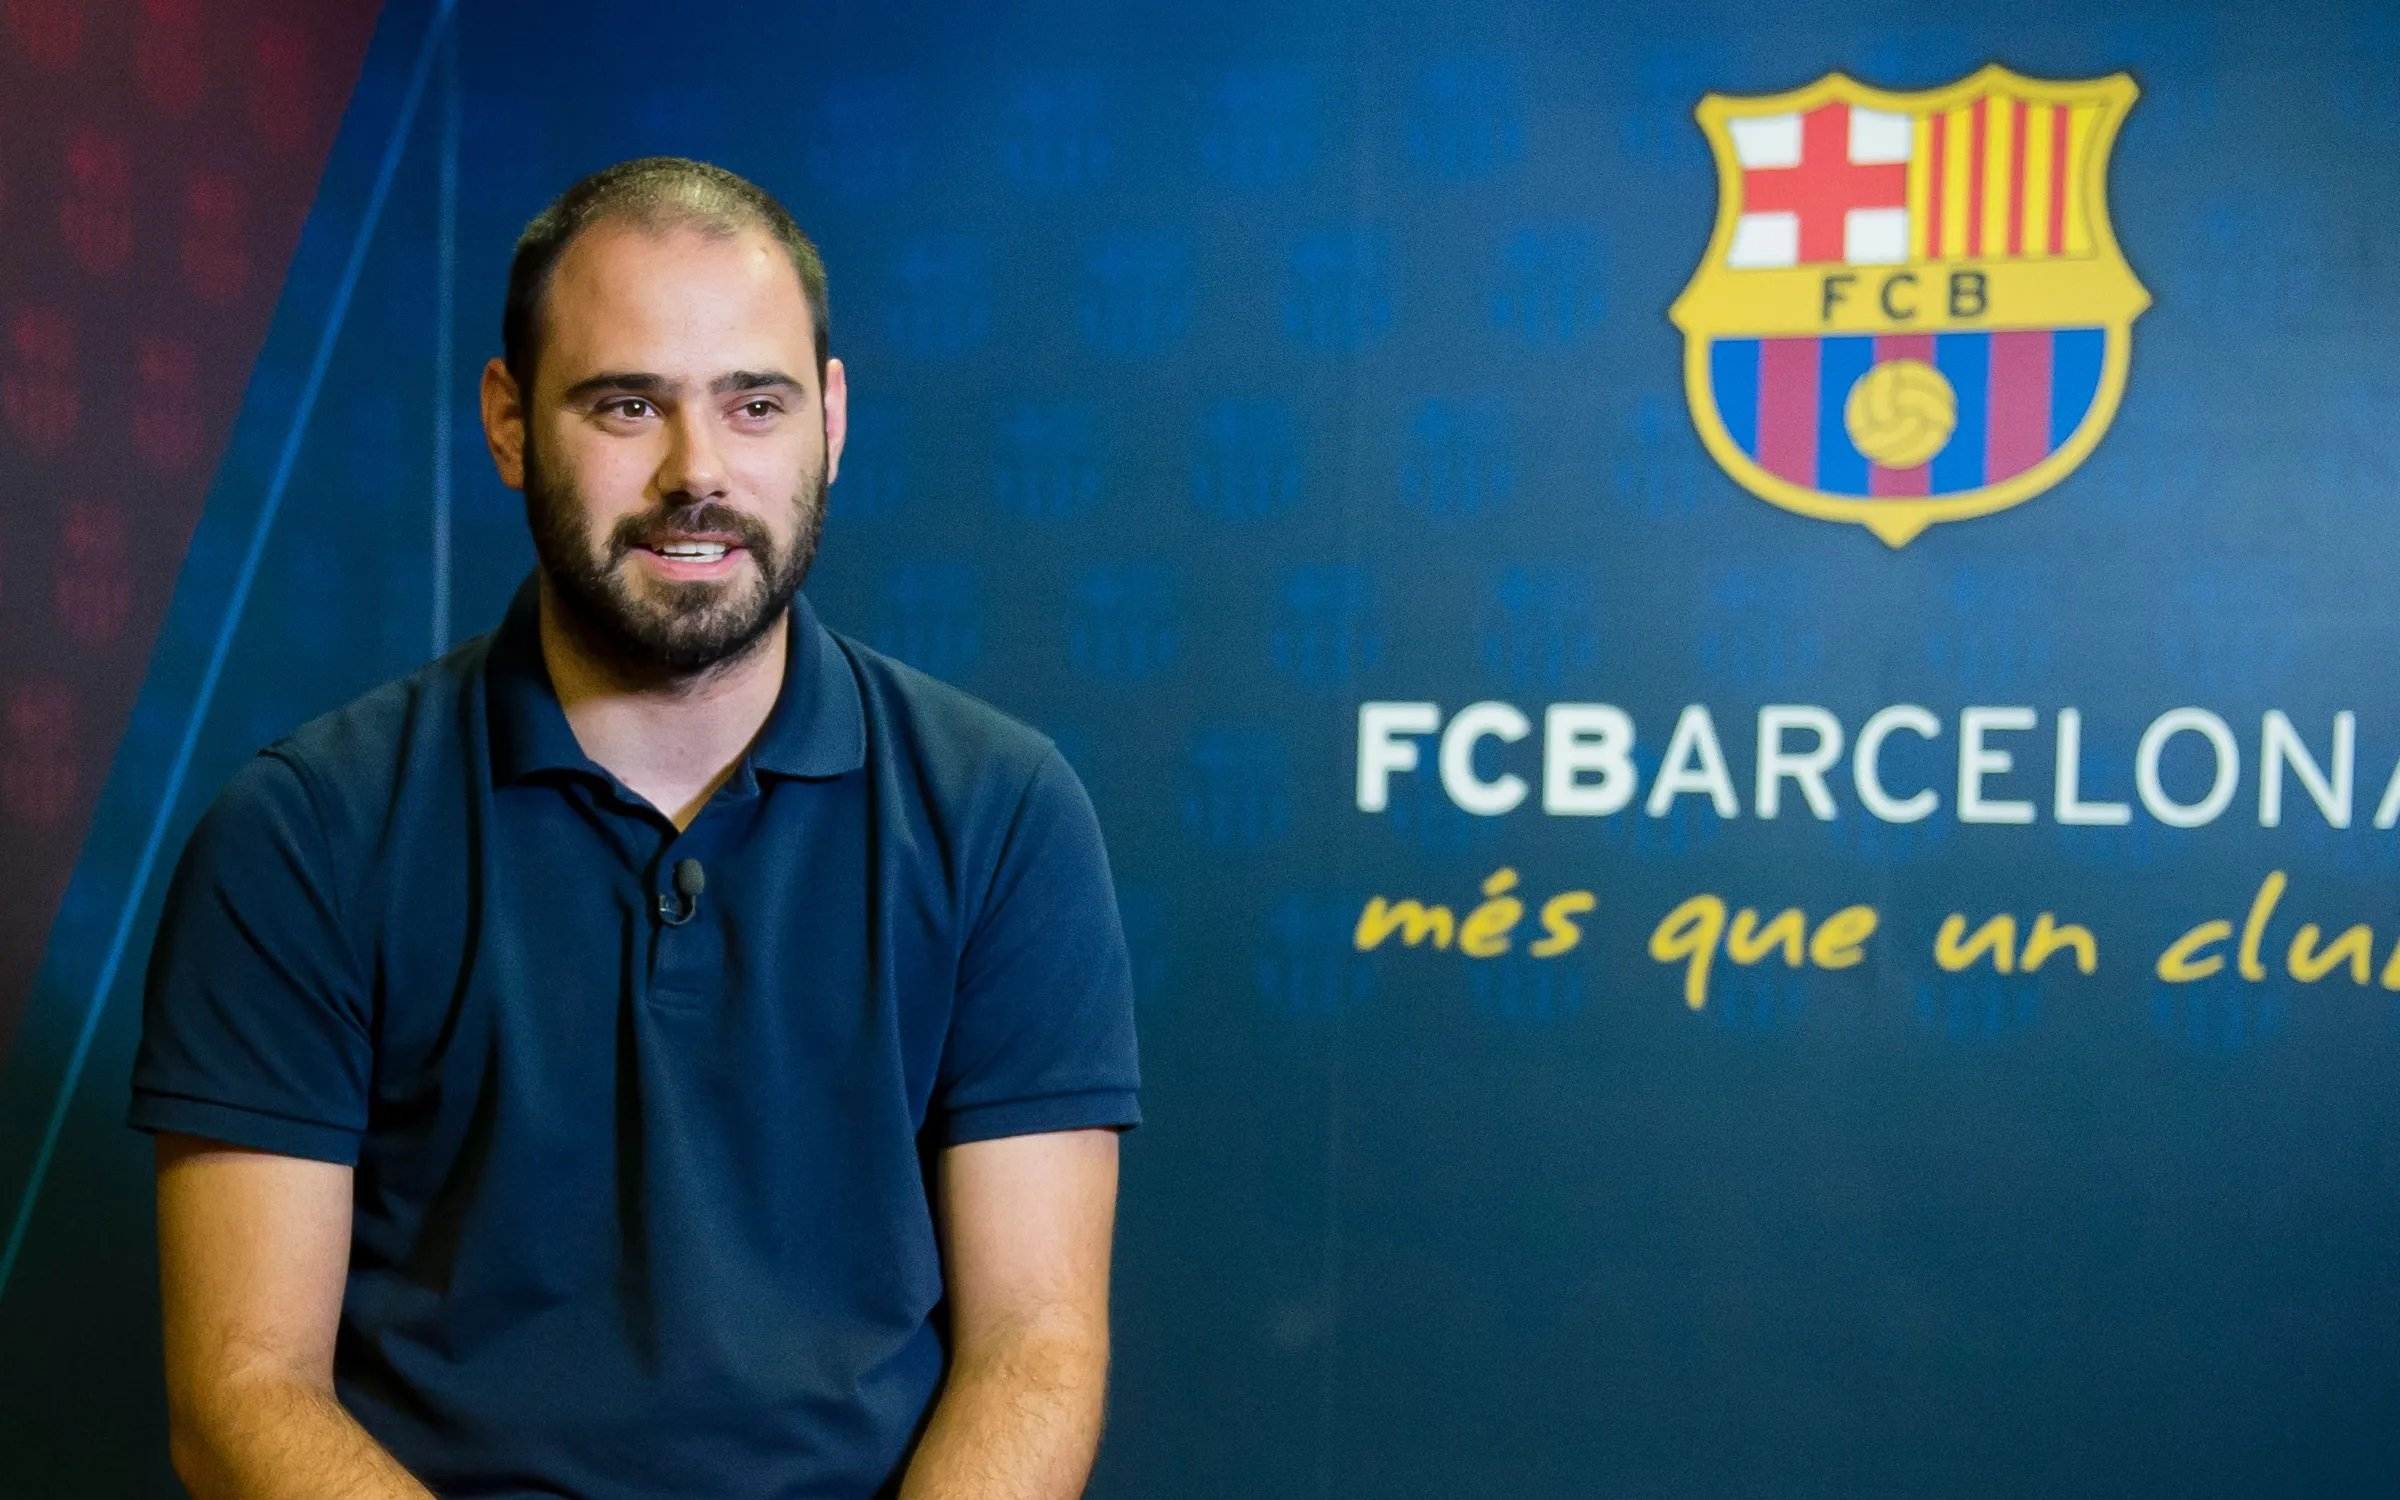 El Barça femení trontolla: Markel Zubizarreta deixa de ser el director esportiu